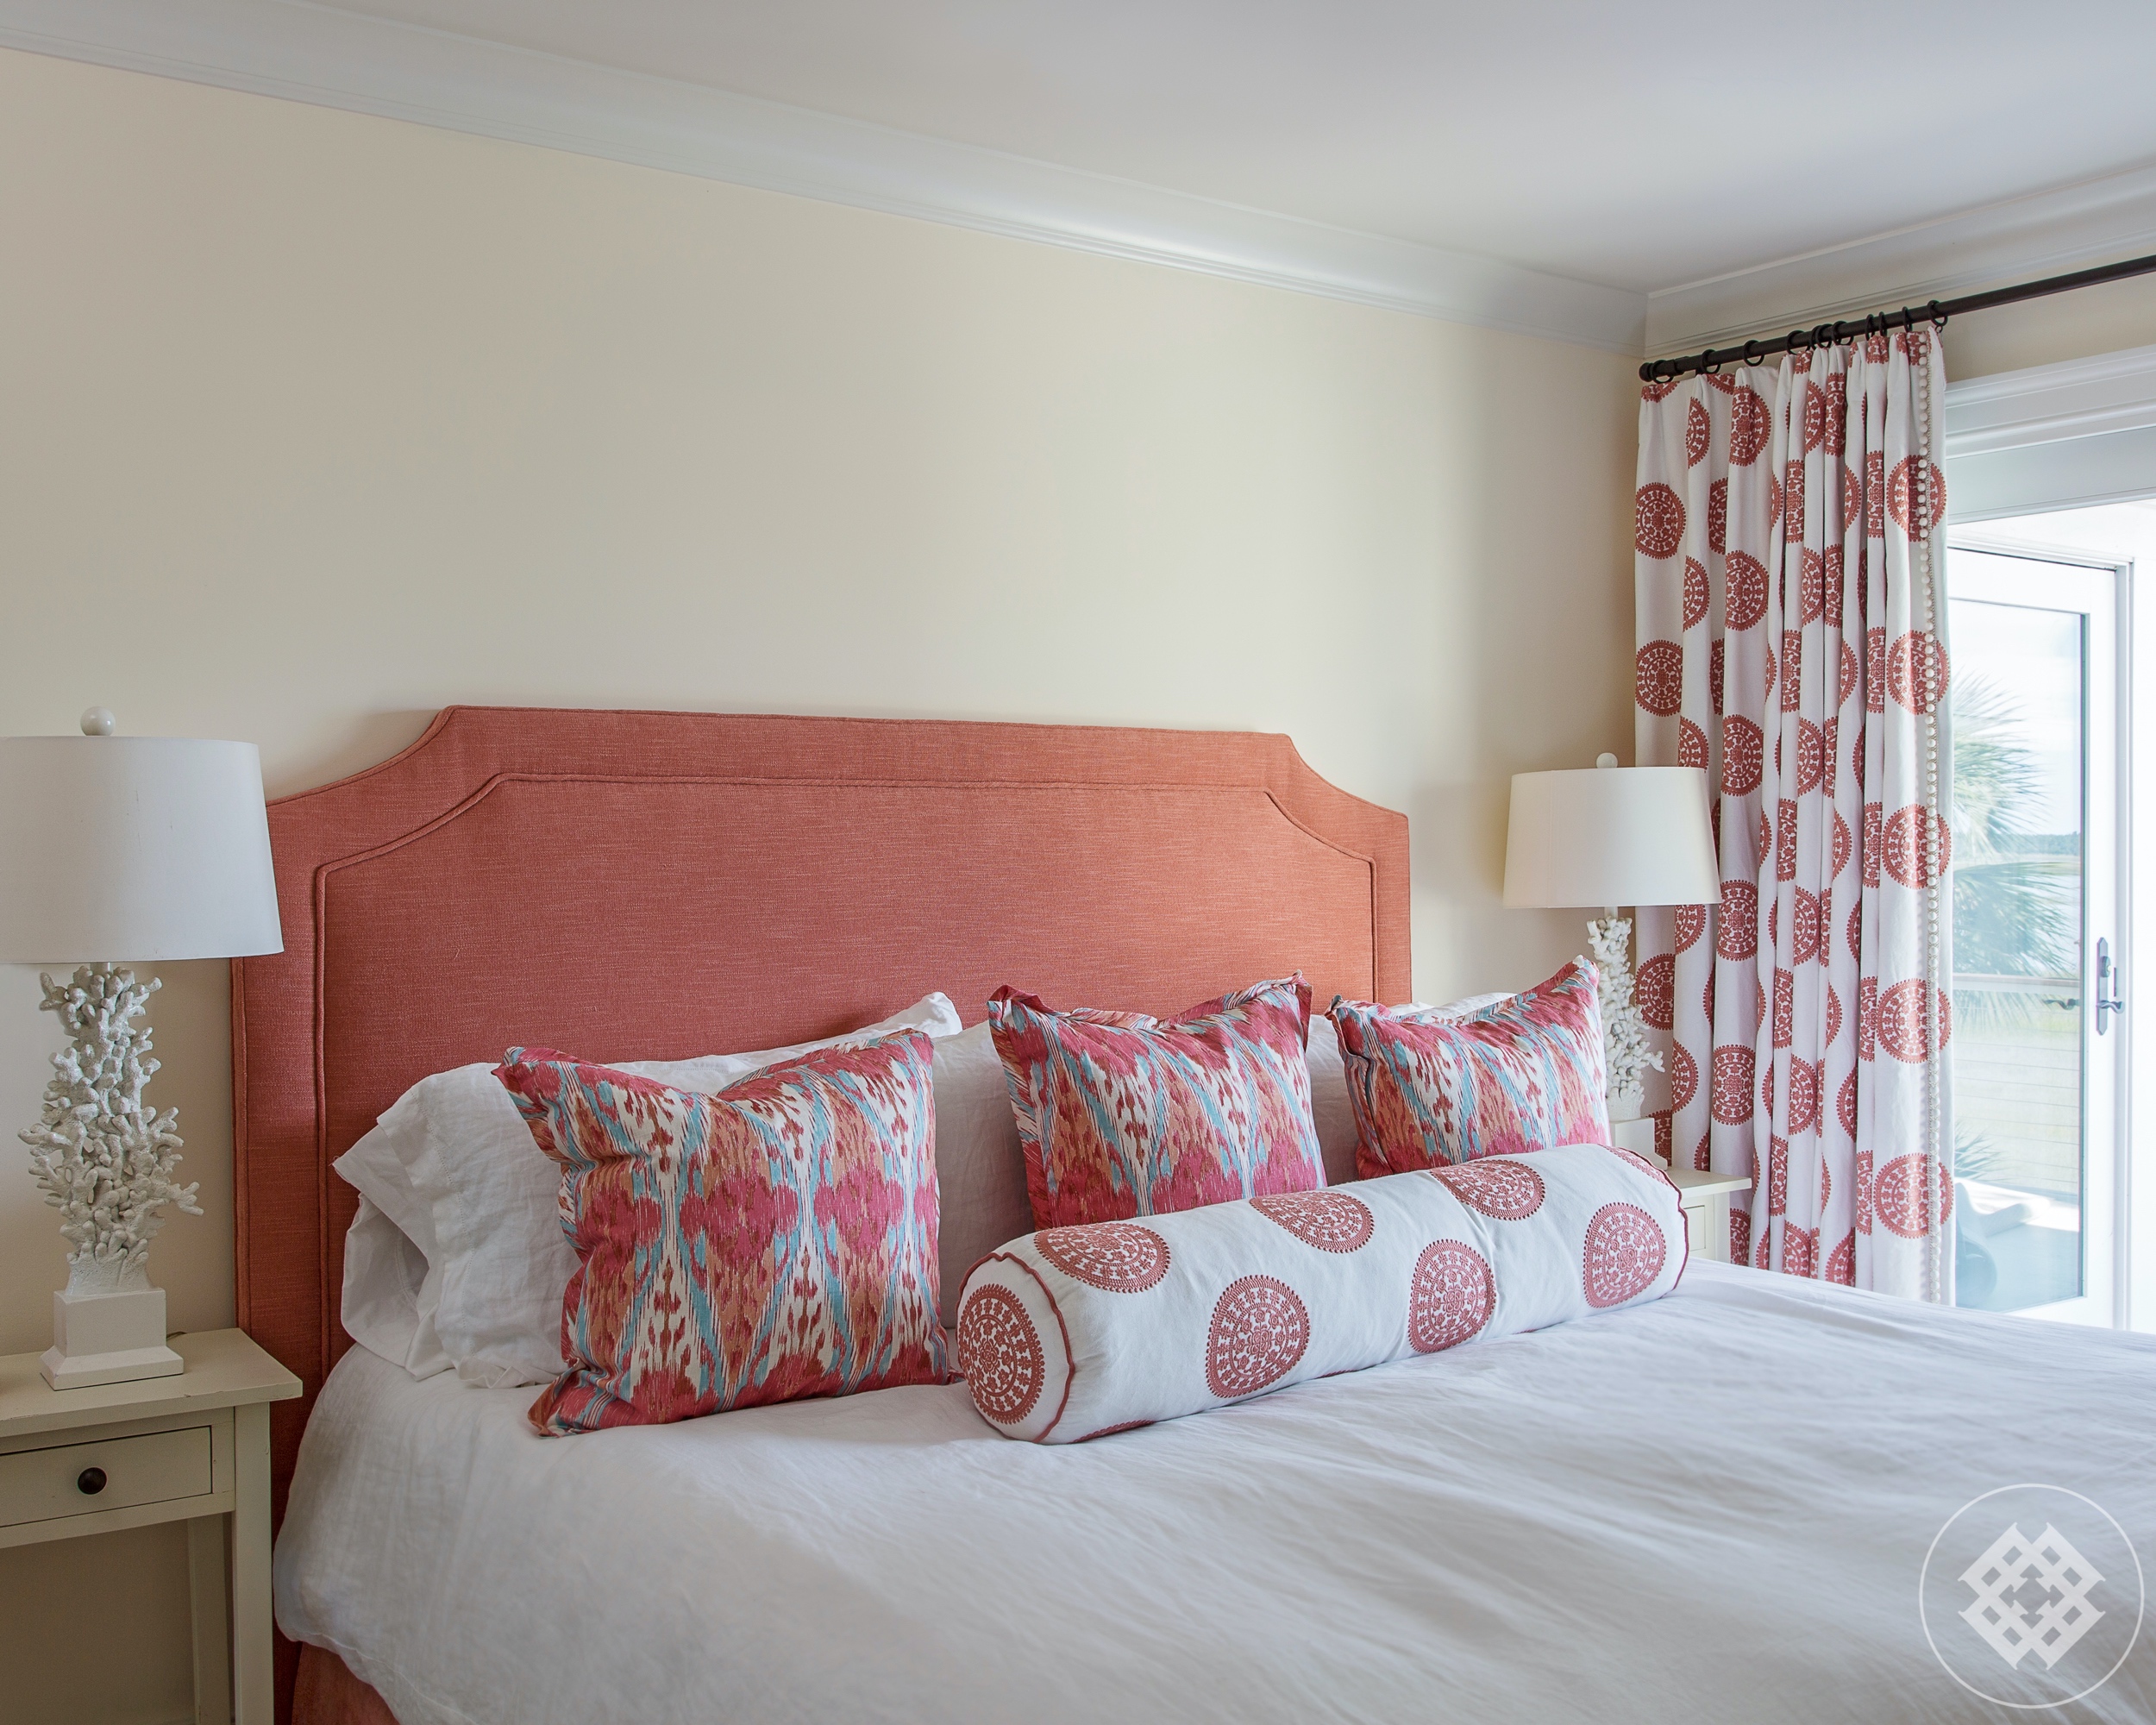 hss-bedroom-fabric-headboard-vintage-coral-lamp.jpg